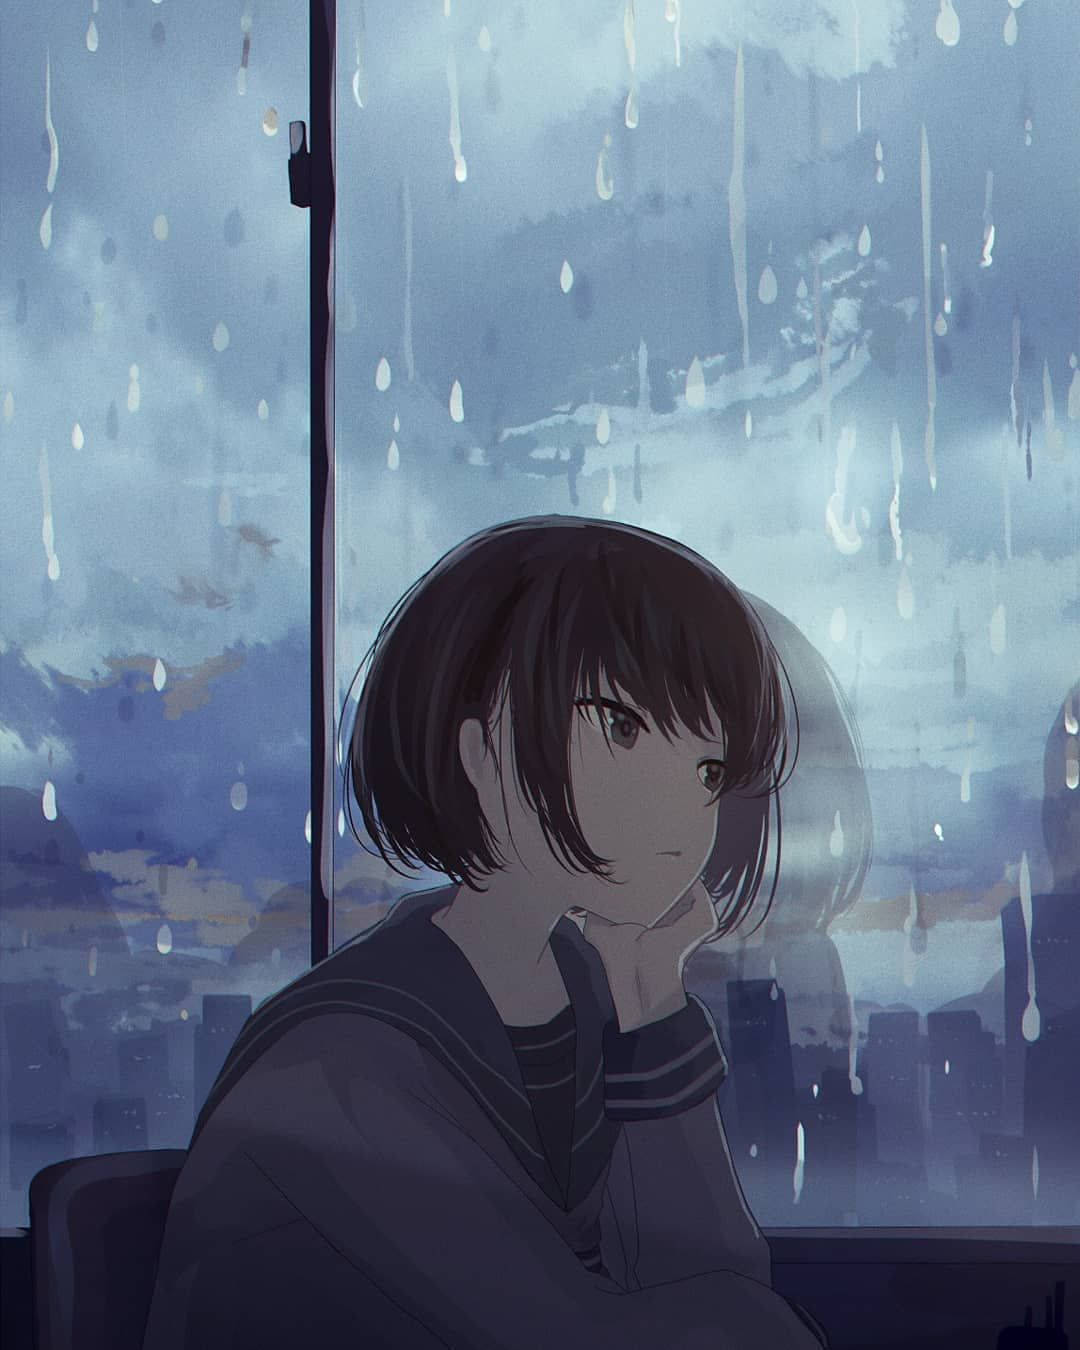 Anime Girl Sad Alone Leaning On Window Raining Background